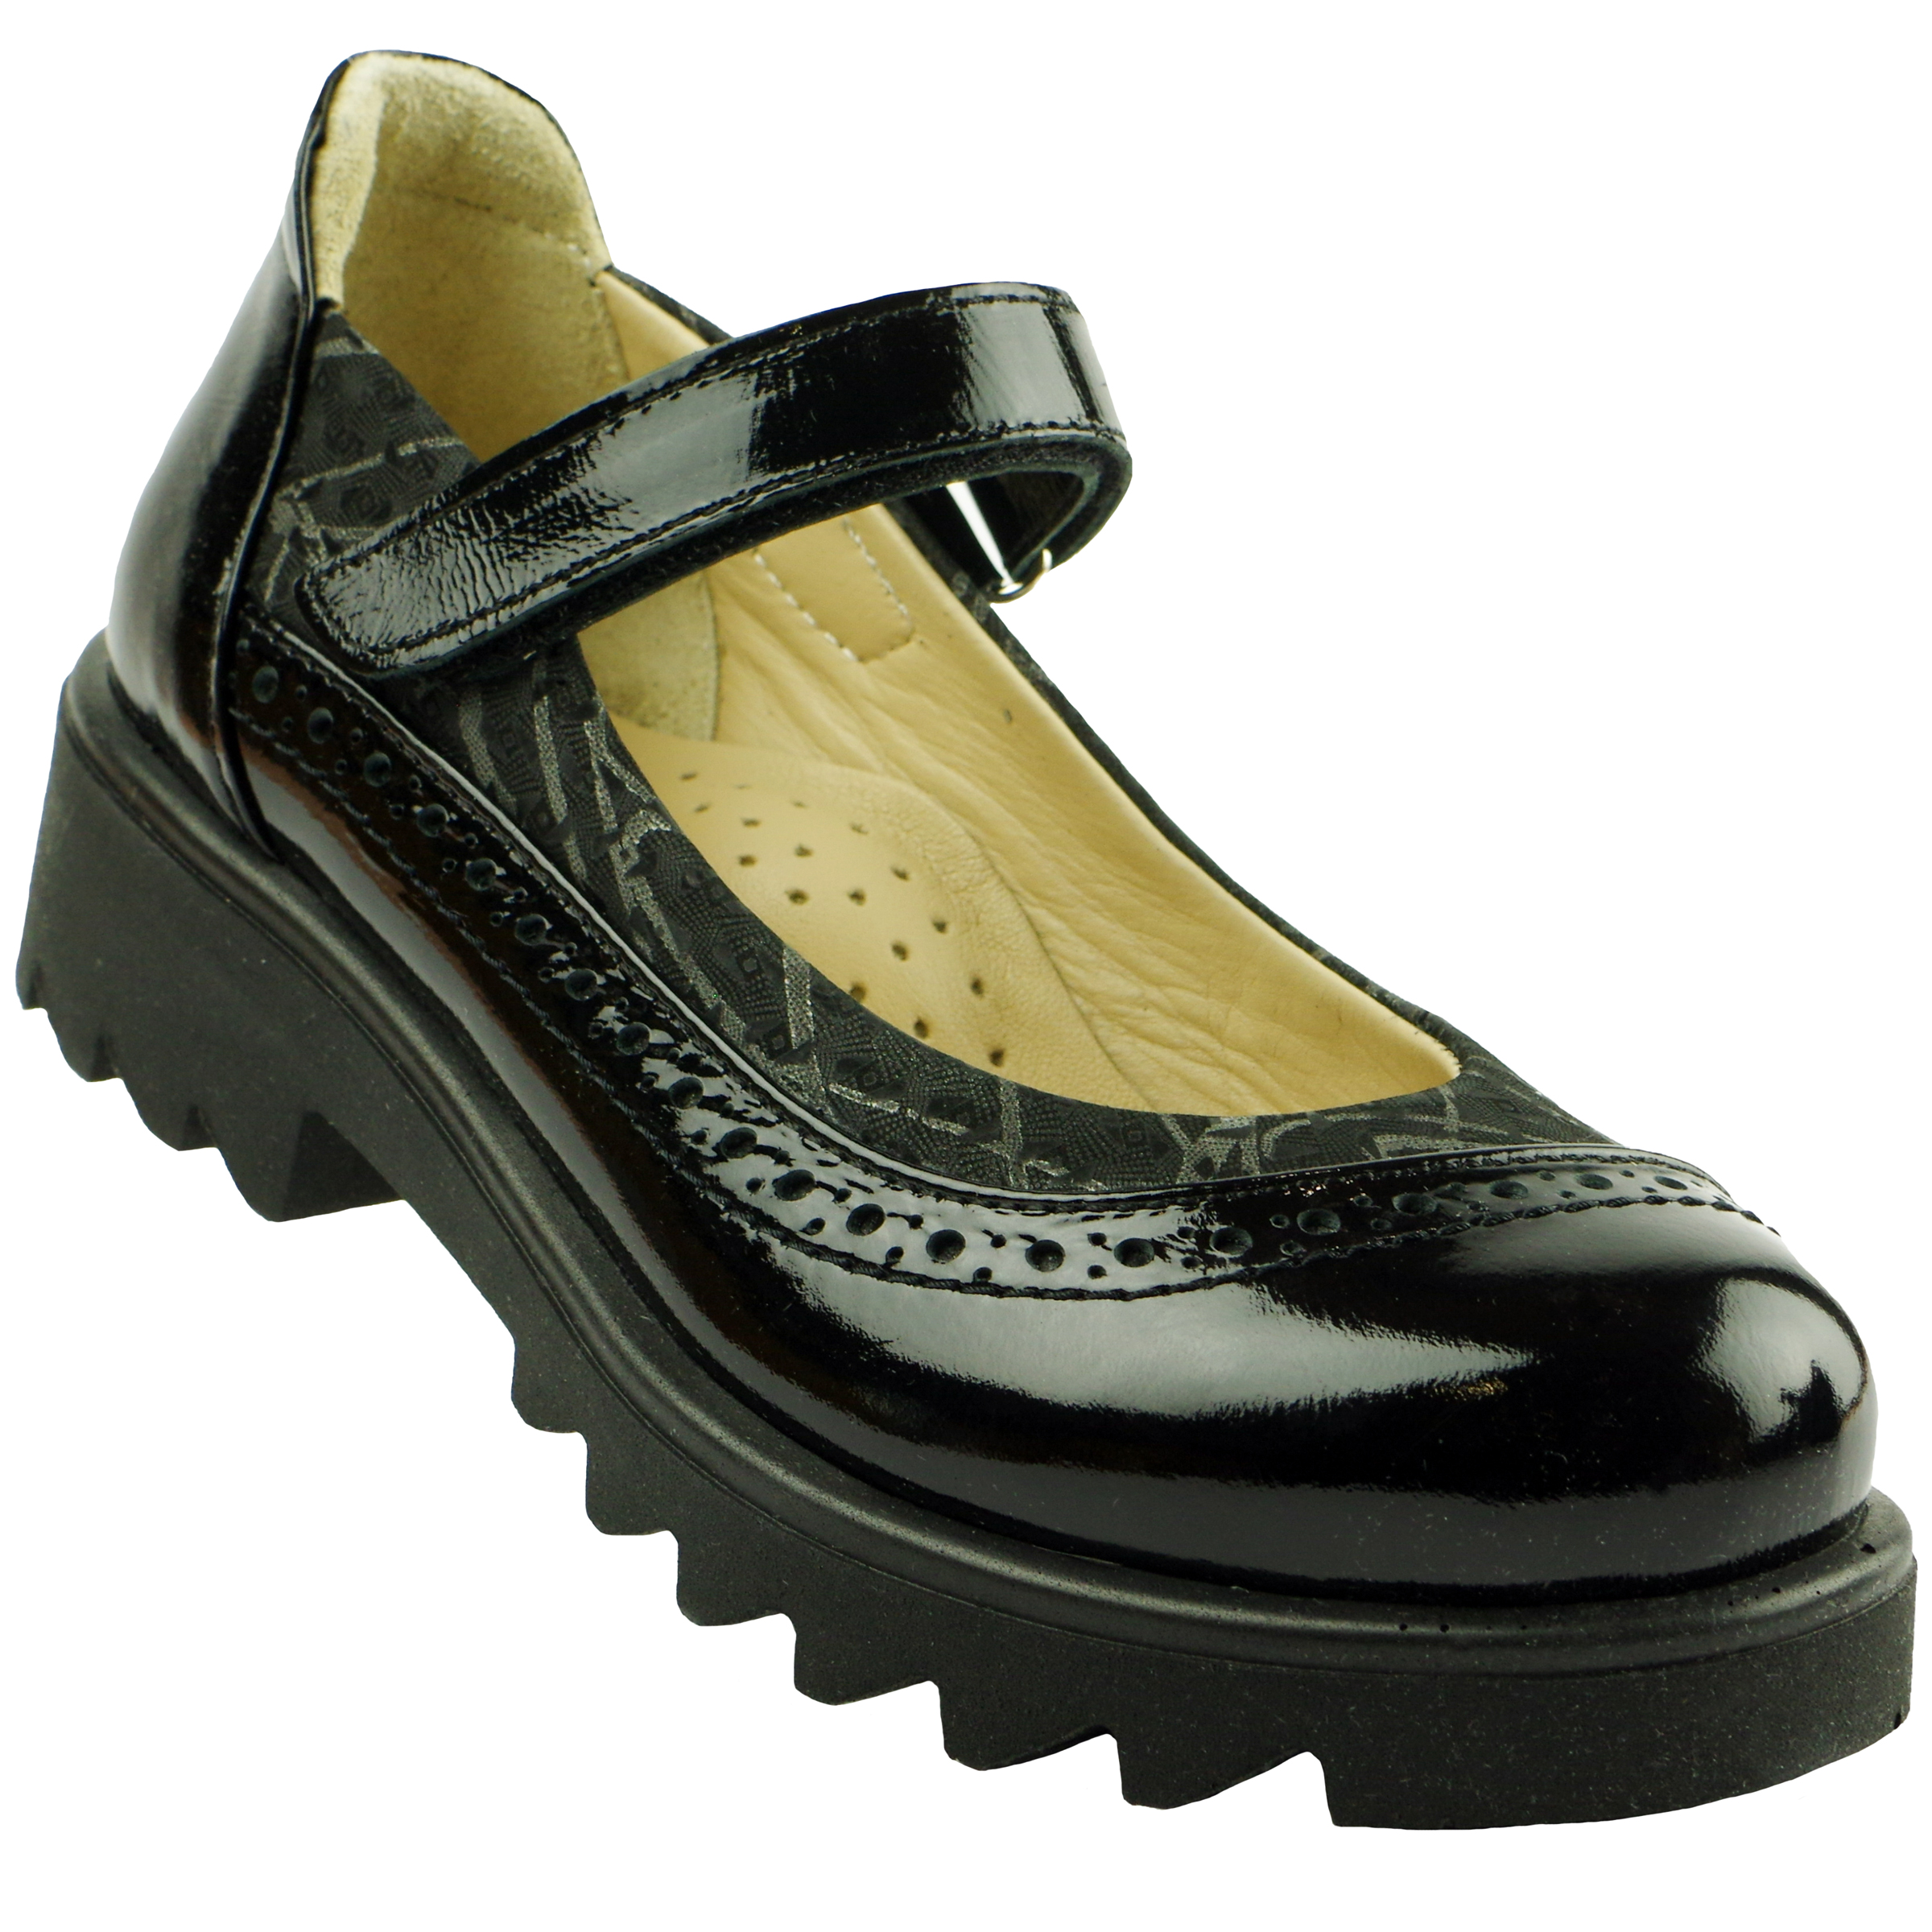 Туфлі дитячі (2116) для дівчинки, матеріал Натуральна шкіра, Чорний колір, 31-36 розміри – Sole Kids